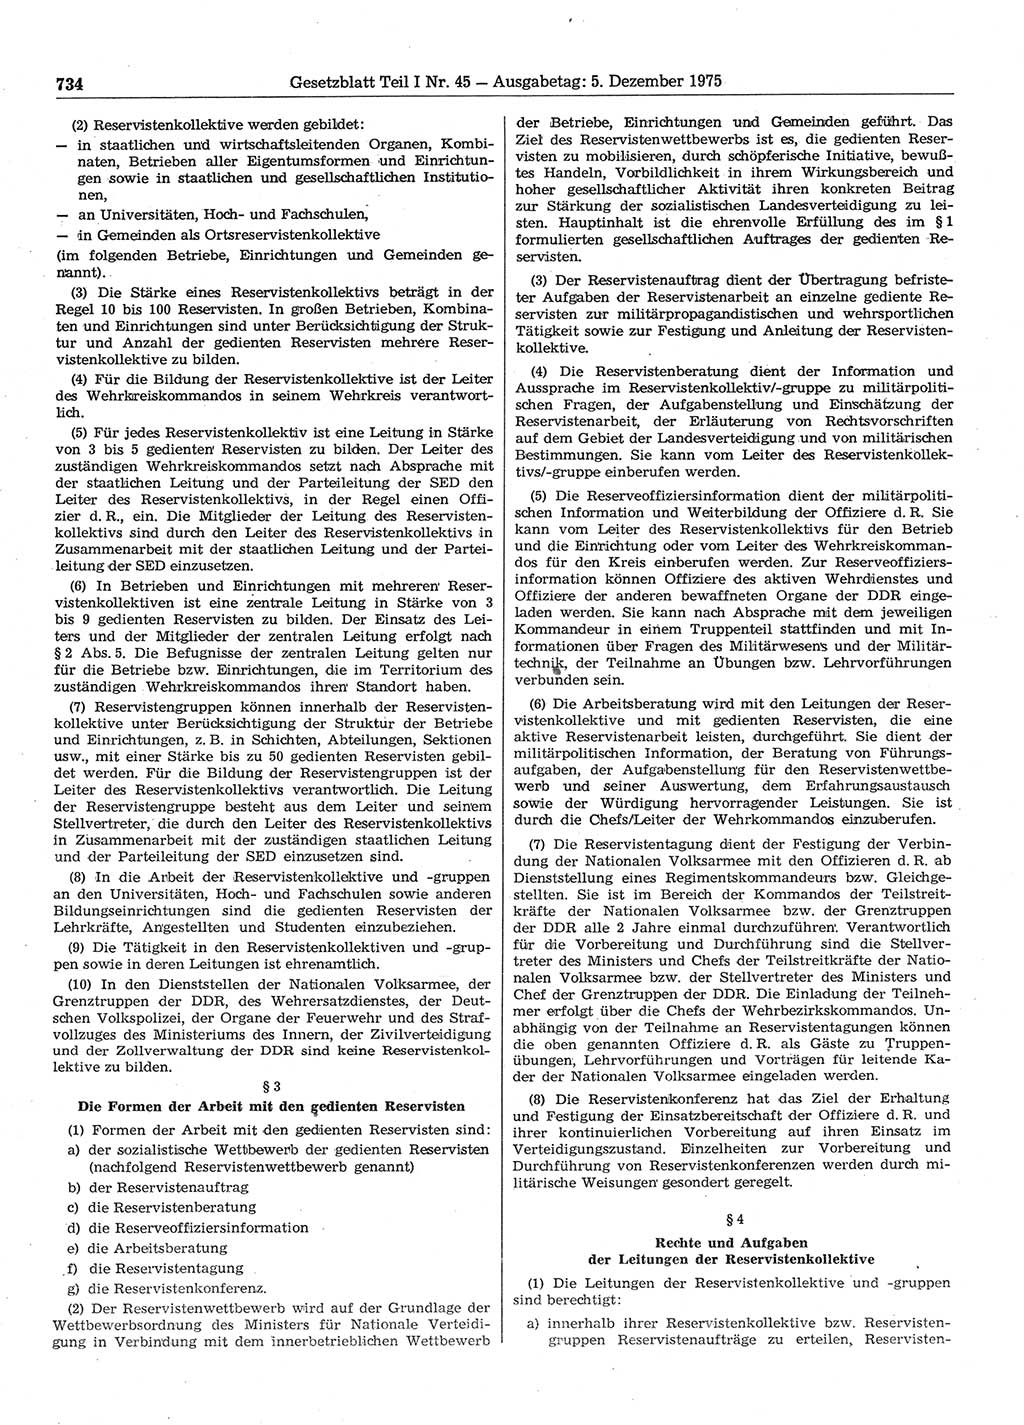 Gesetzblatt (GBl.) der Deutschen Demokratischen Republik (DDR) Teil Ⅰ 1975, Seite 734 (GBl. DDR Ⅰ 1975, S. 734)